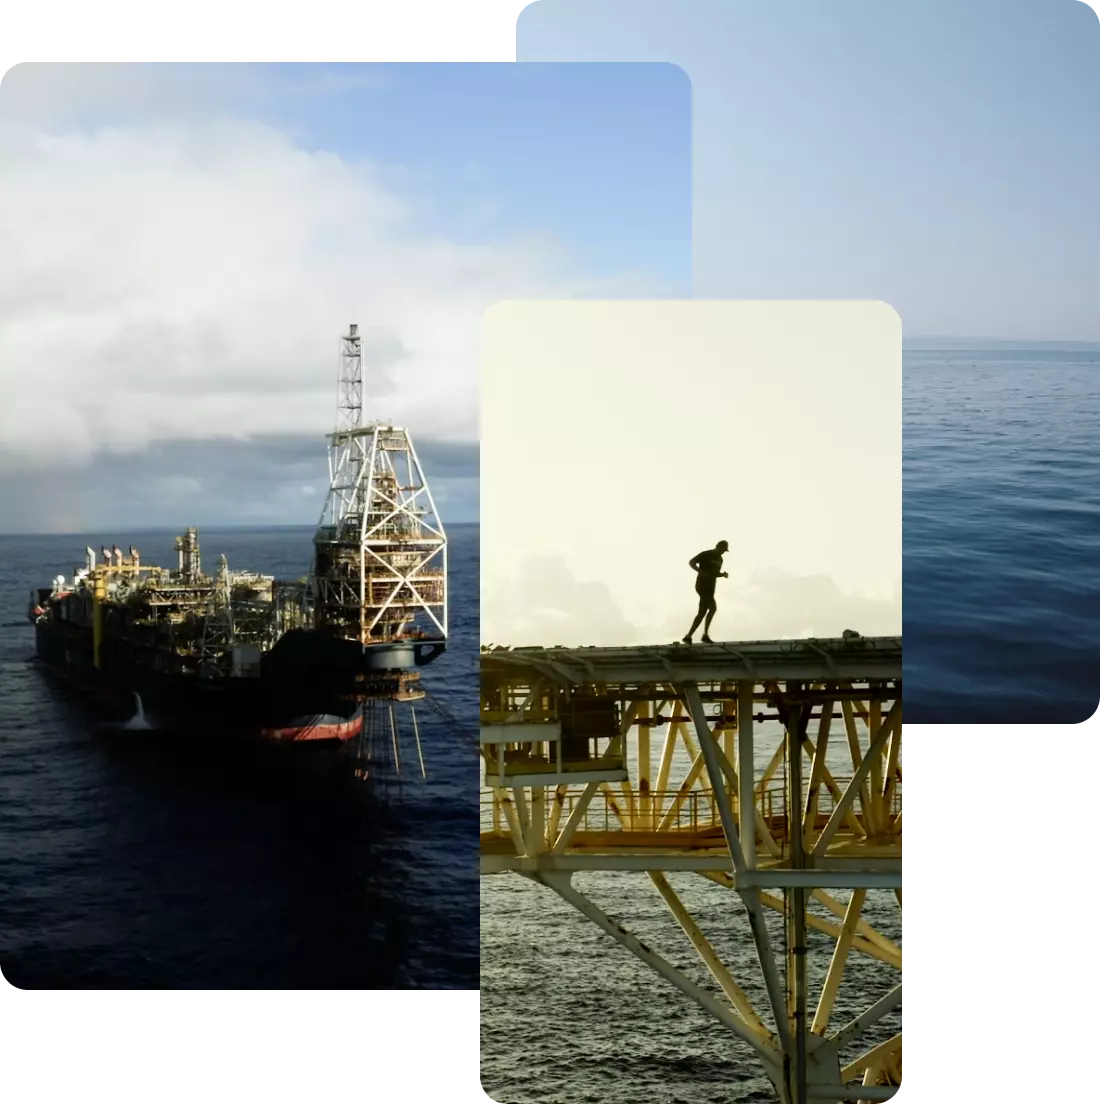 Compilado de três fotos de uma plataforma de petróleo da PRIO